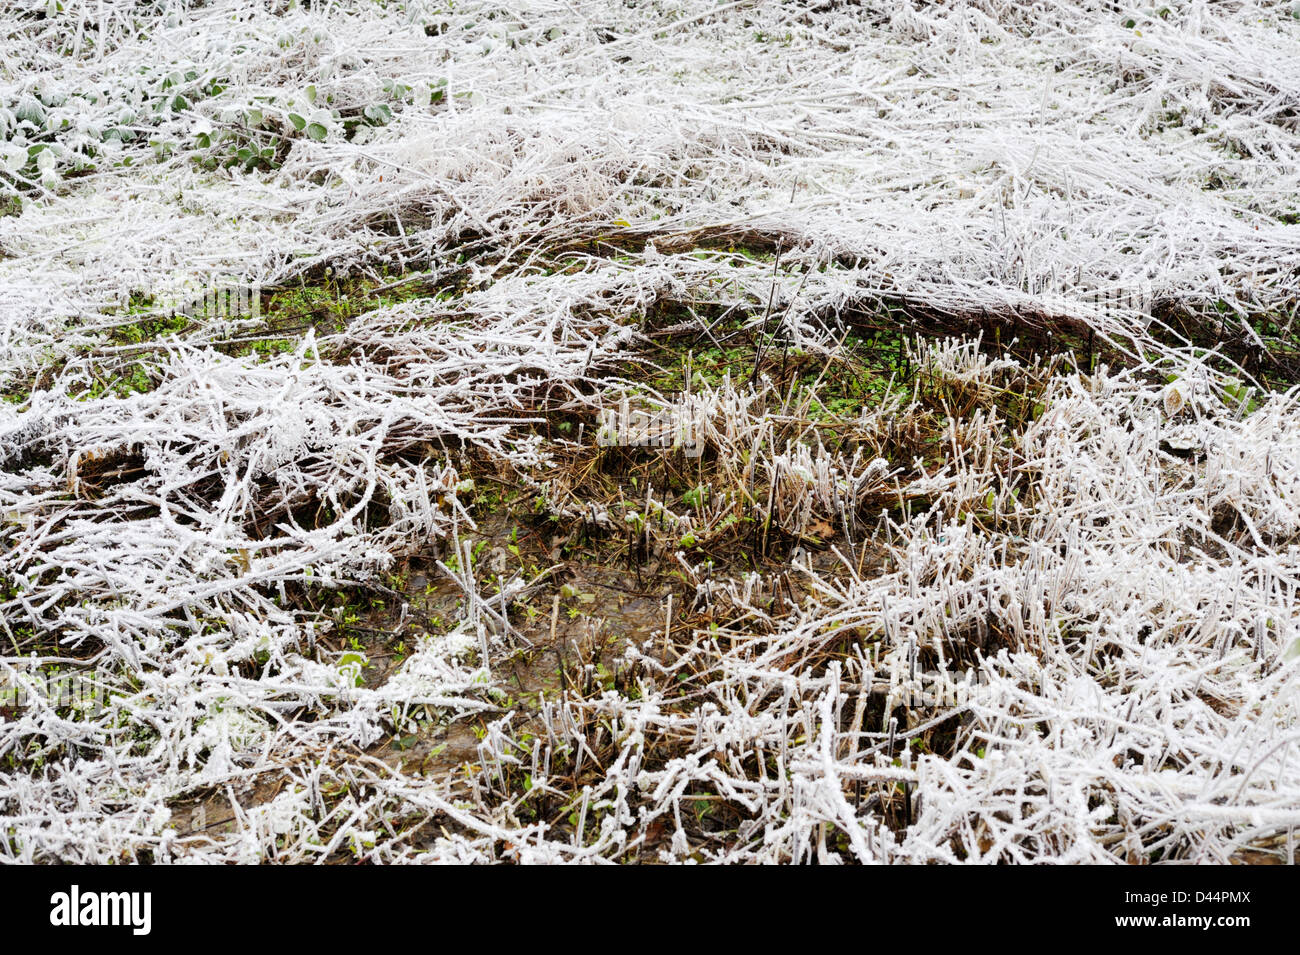 Une chasse d'eau dans un champ gelé, plus chaude que son environnement, constitue une niche écologique, au Pays de Galles. Banque D'Images